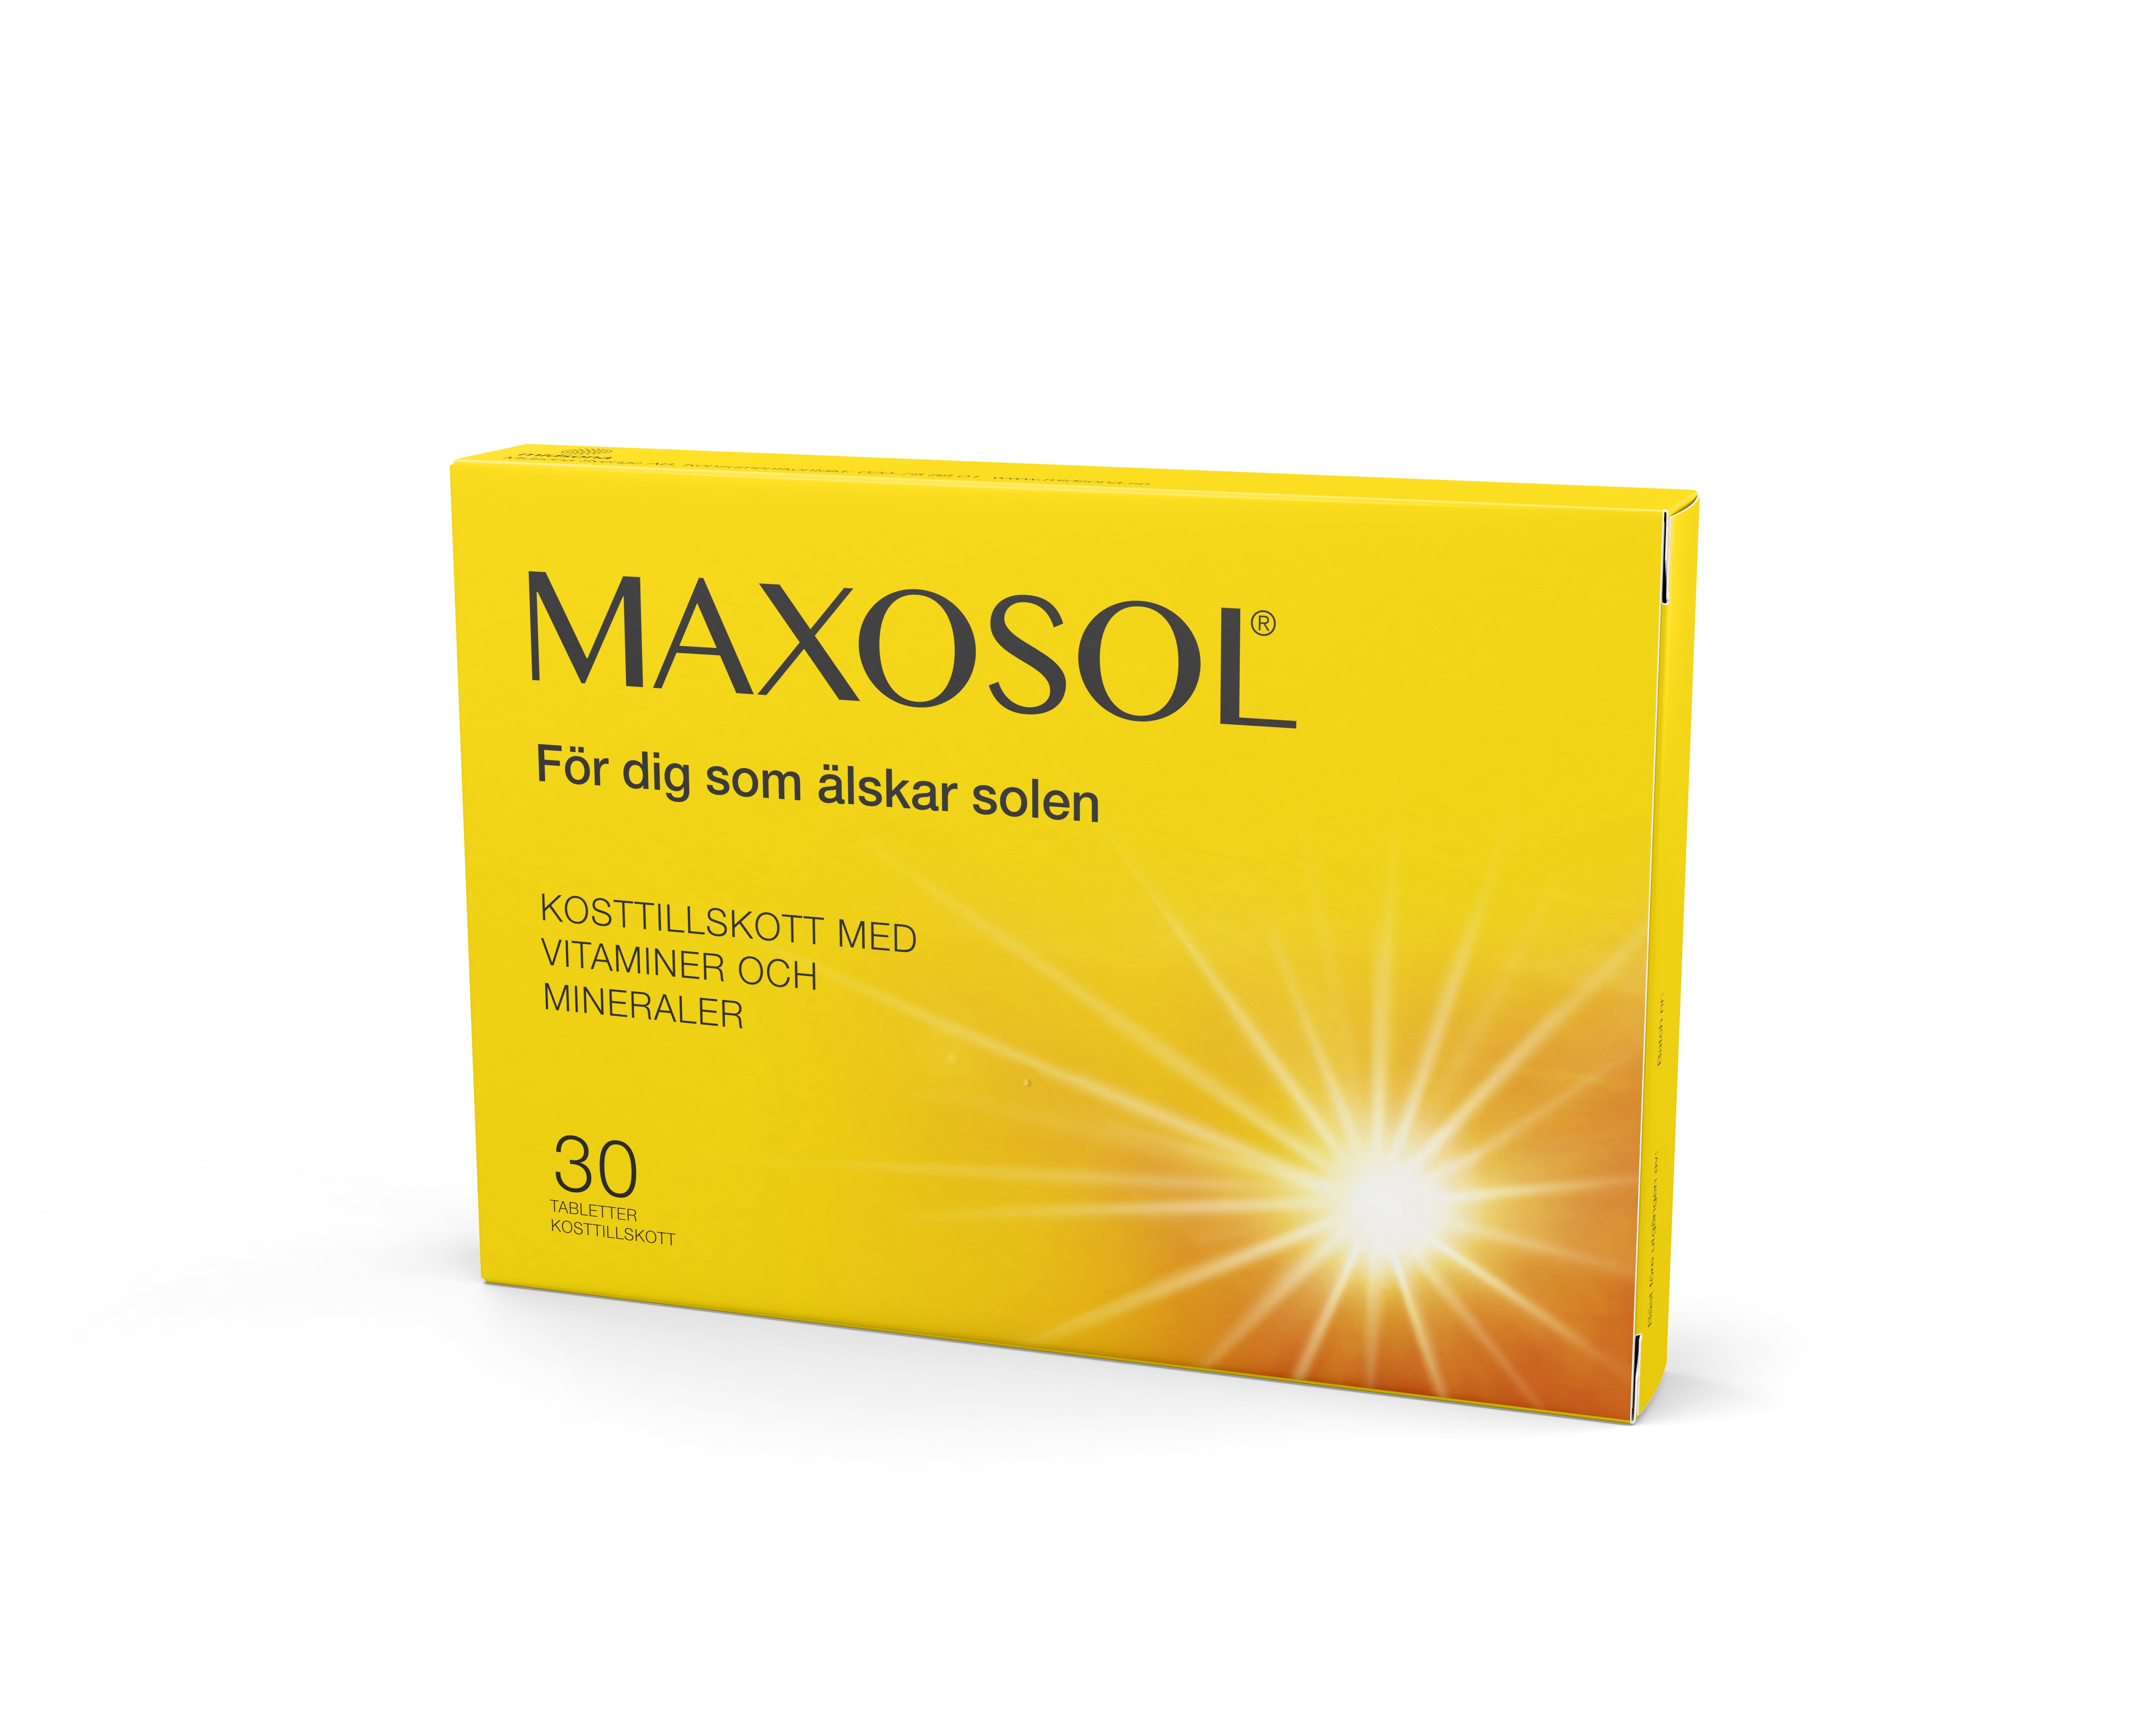 Maxosol 30 tabletter